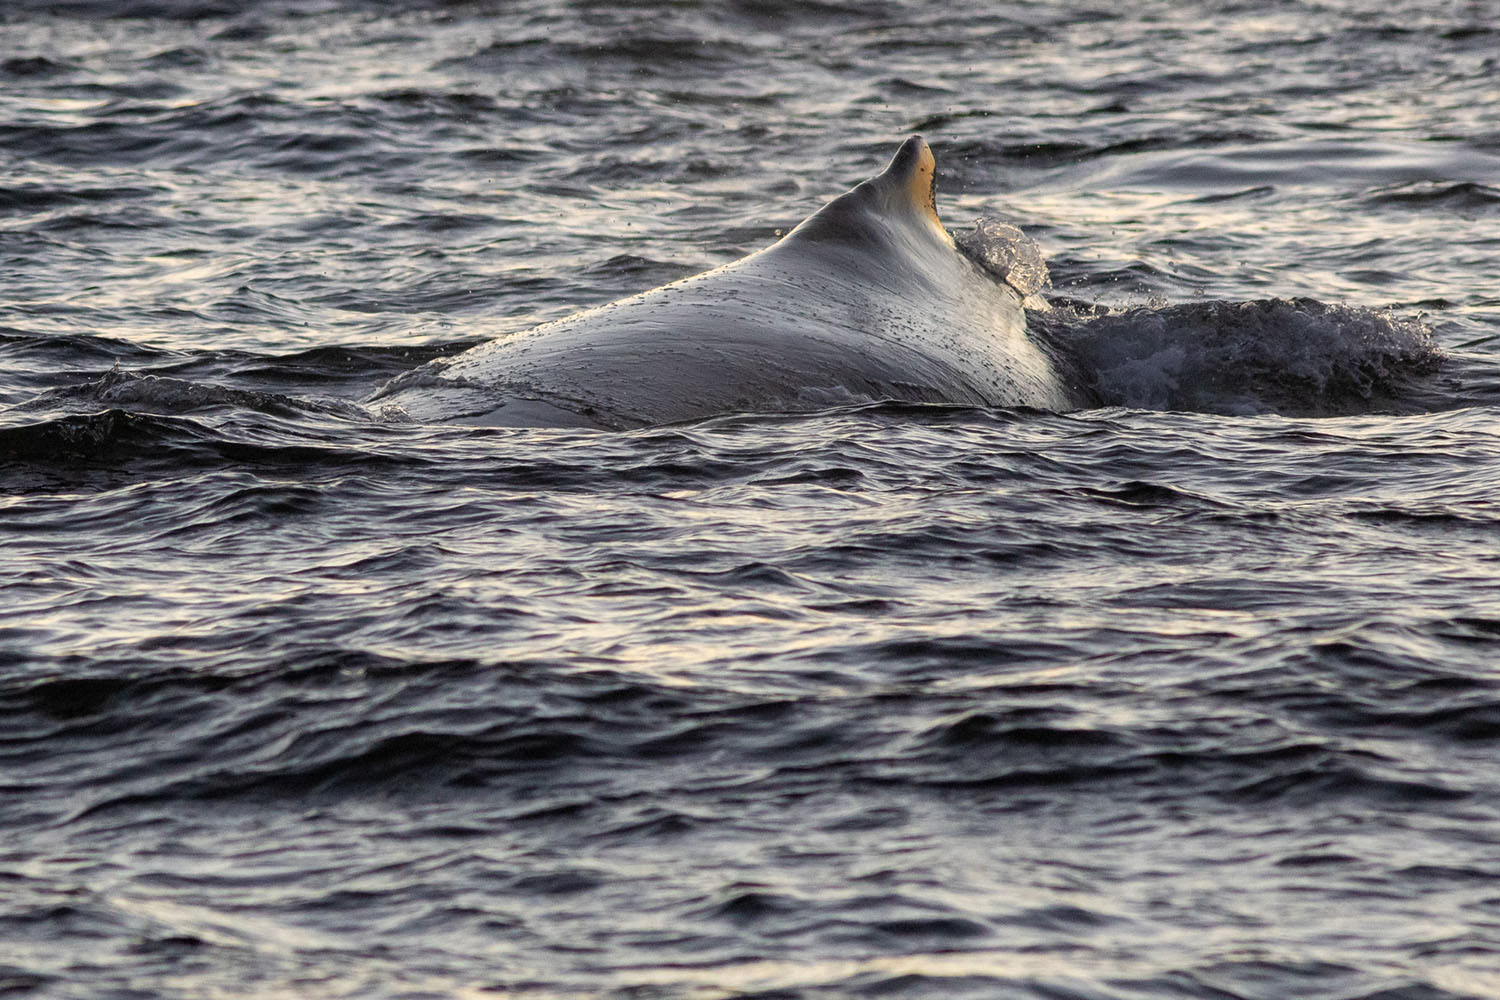 voyage scientifique - orques et baleines a bosse de norvege 46